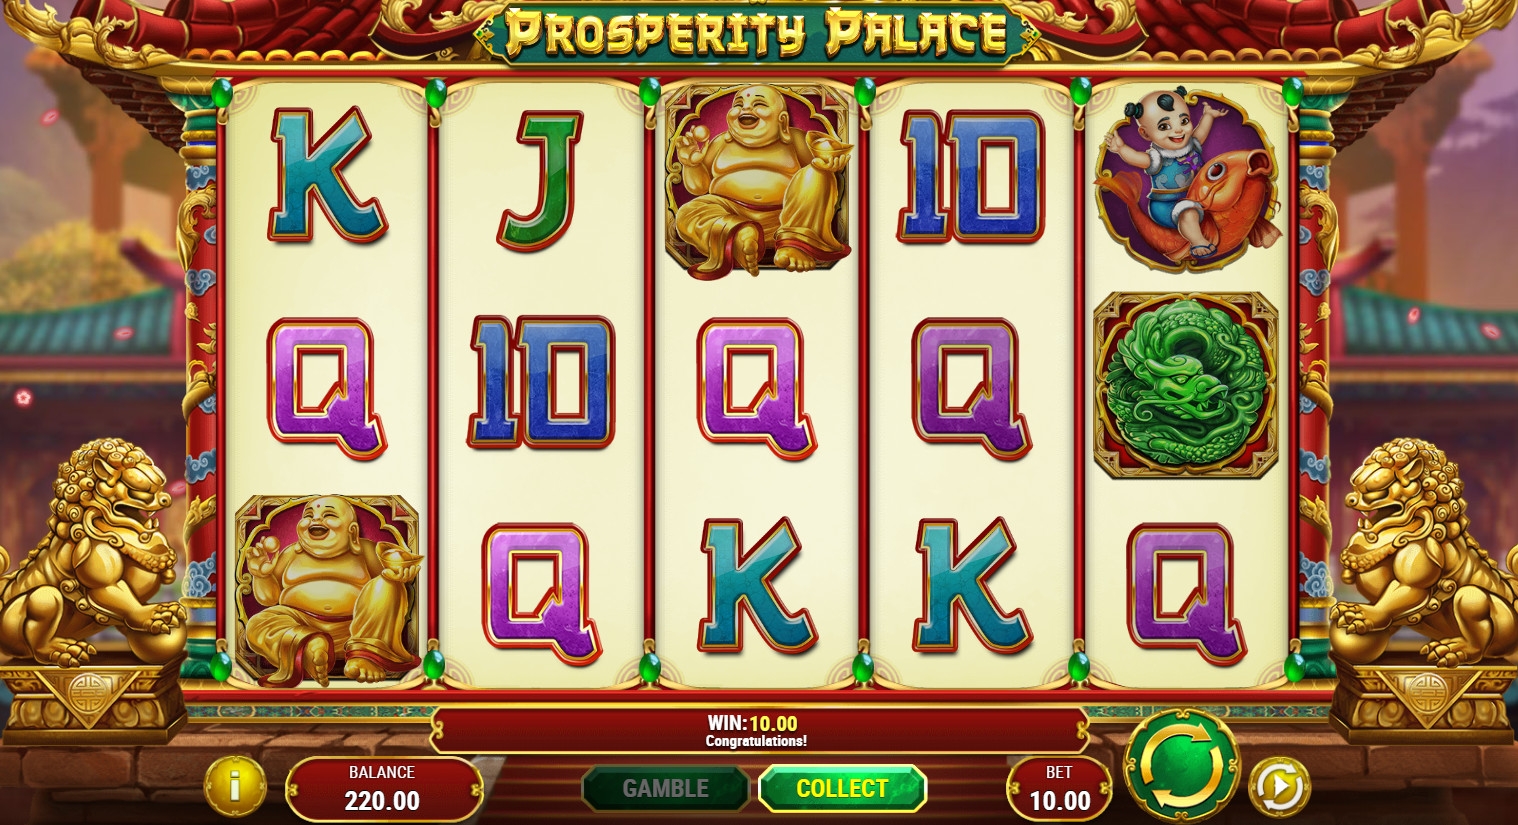 Prosperity Palace (Prosperity Palace) from category Slots